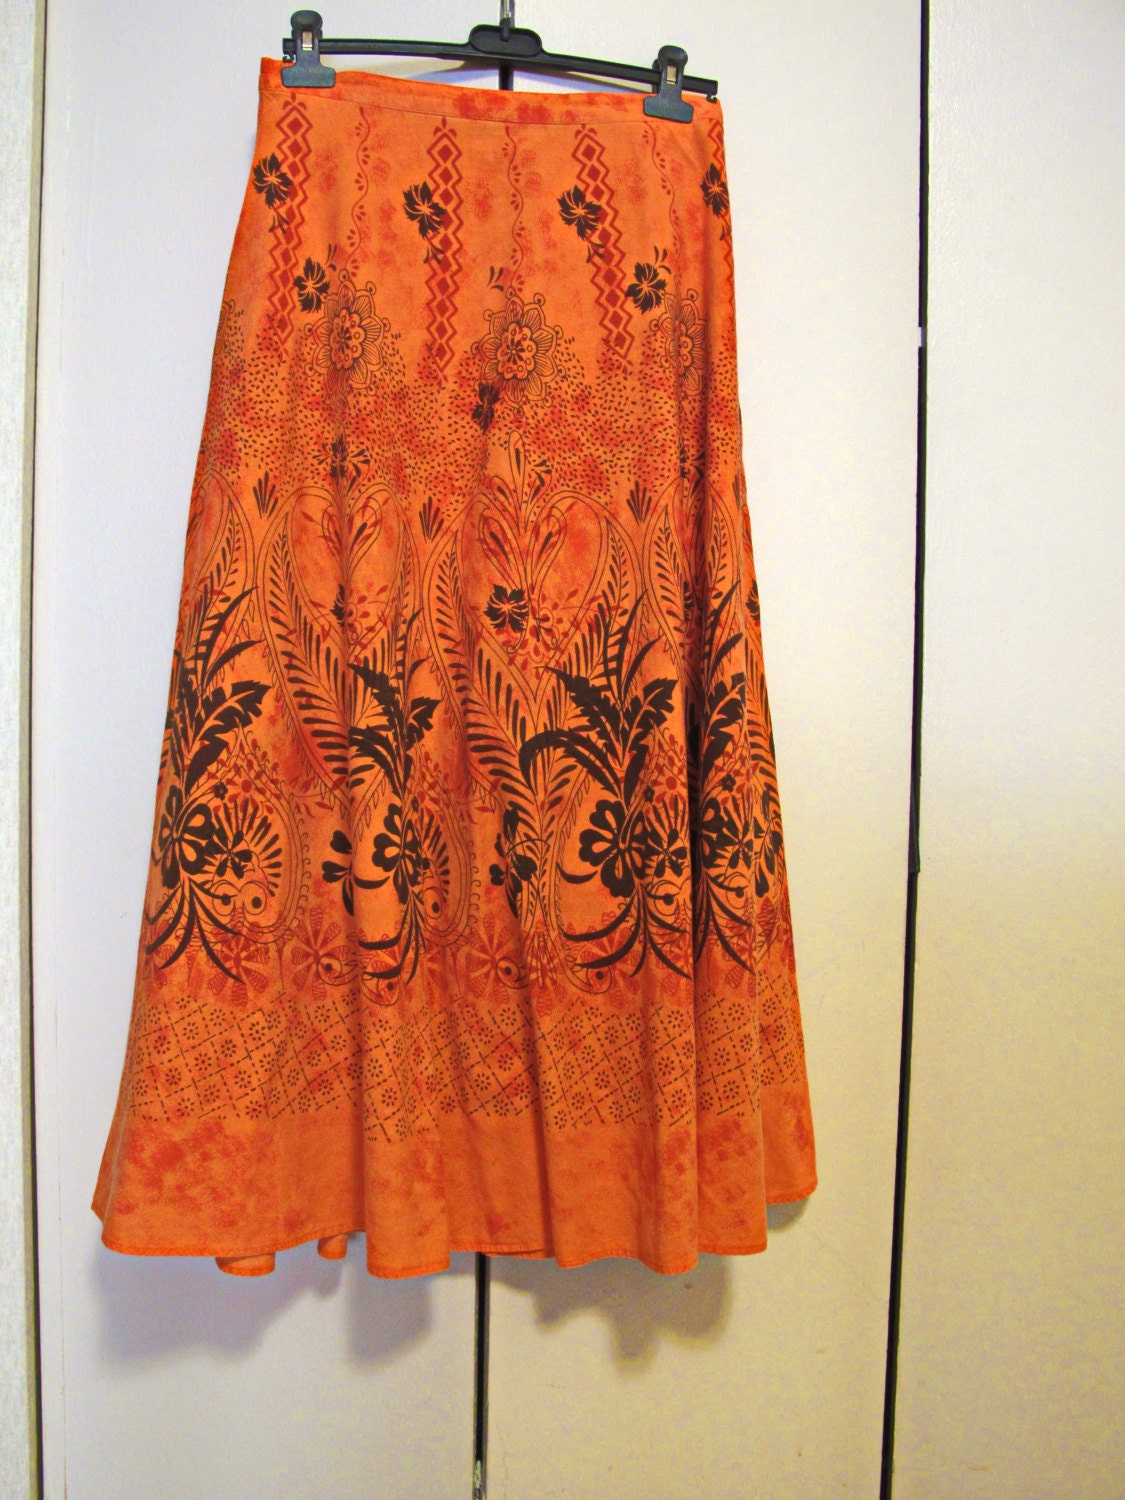 Burned Orange Boho Skirt Hippie Long Skirt Gypsy by BulletsNThings